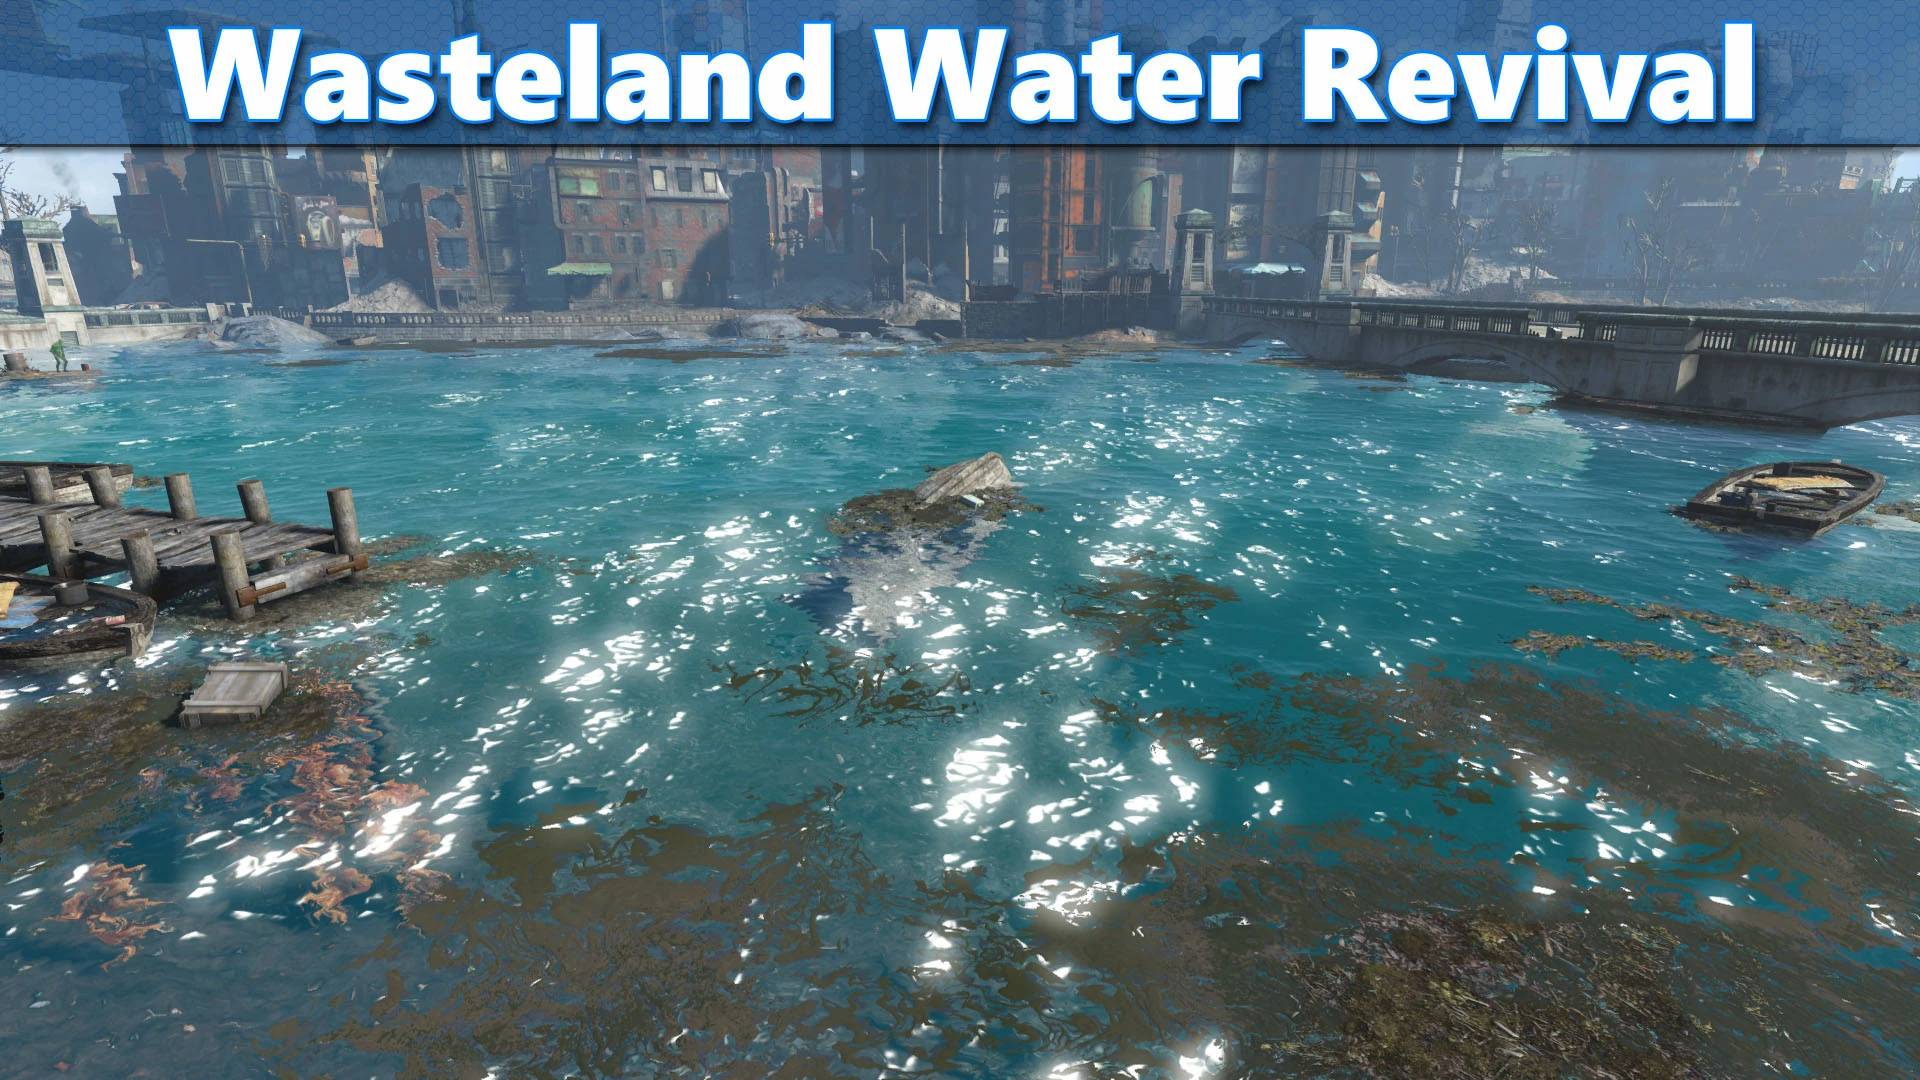 Wasteland Water Revival